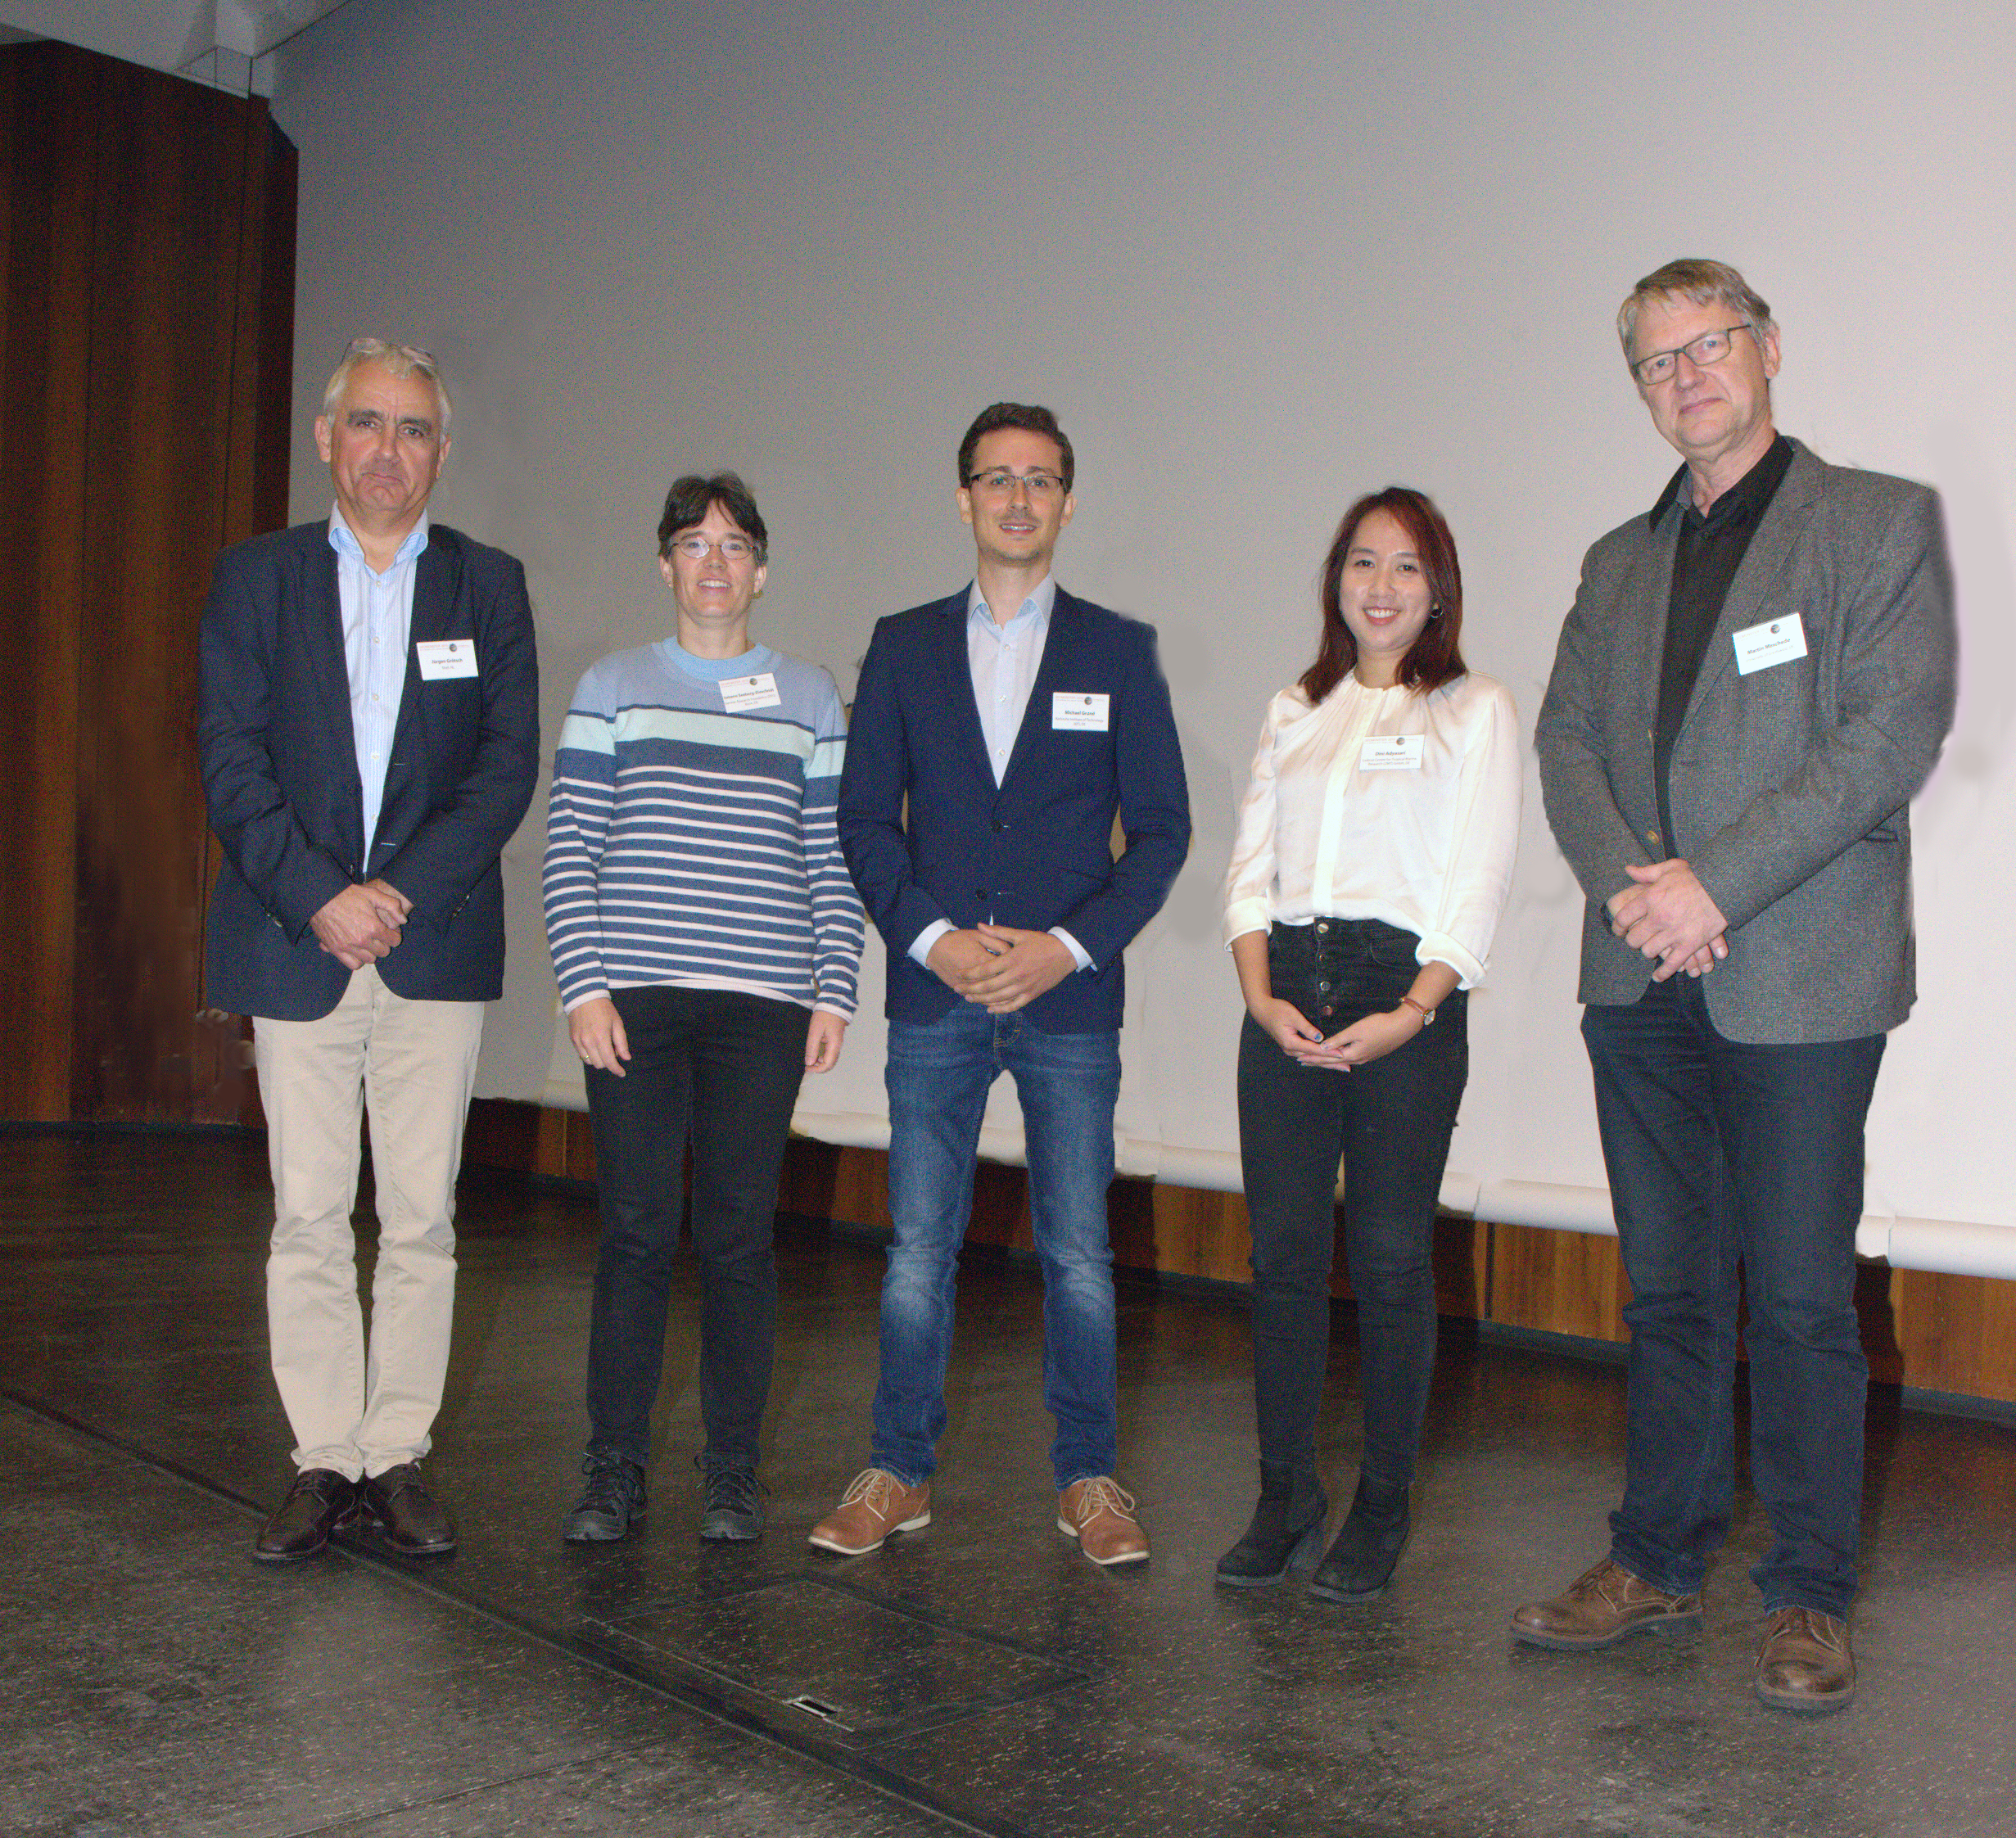 Gruppenbild von der Verleihung des Bernd Rendel-Preises